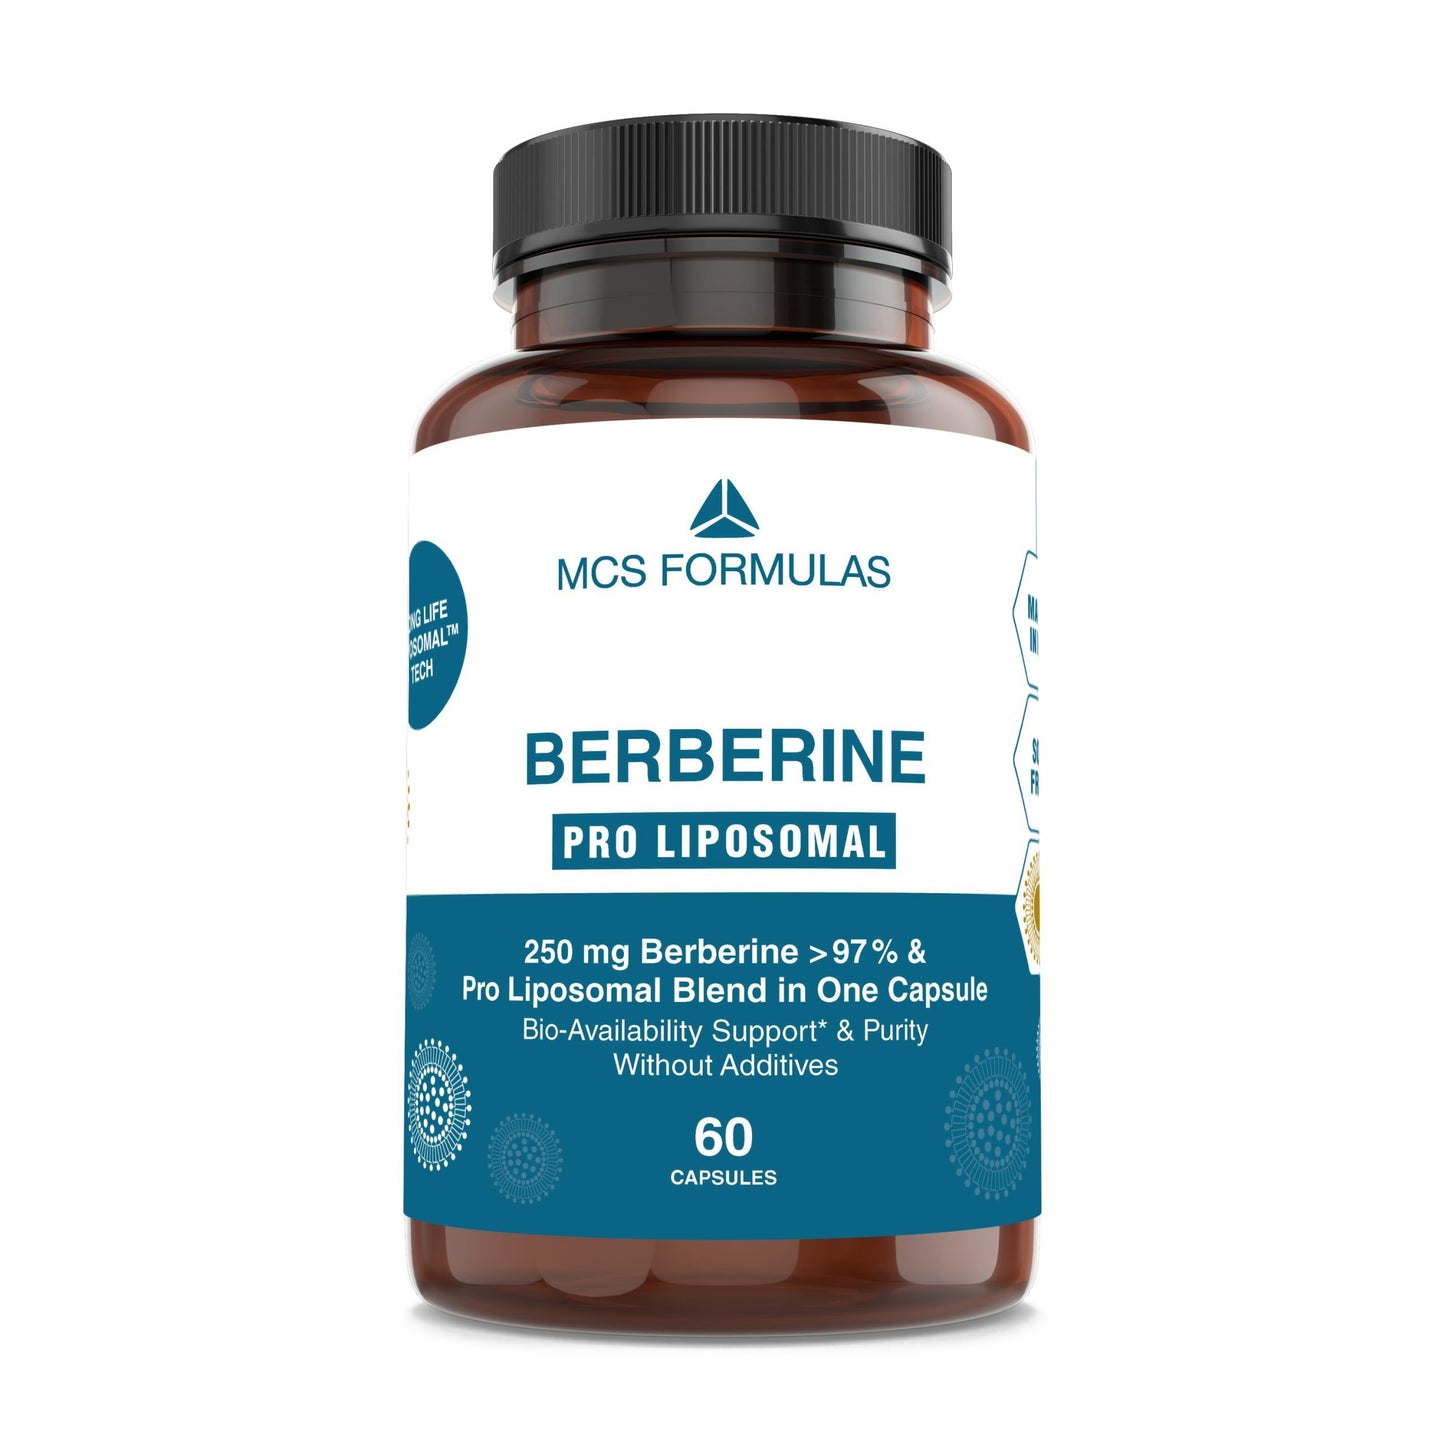 Berberine Pro Liposomal